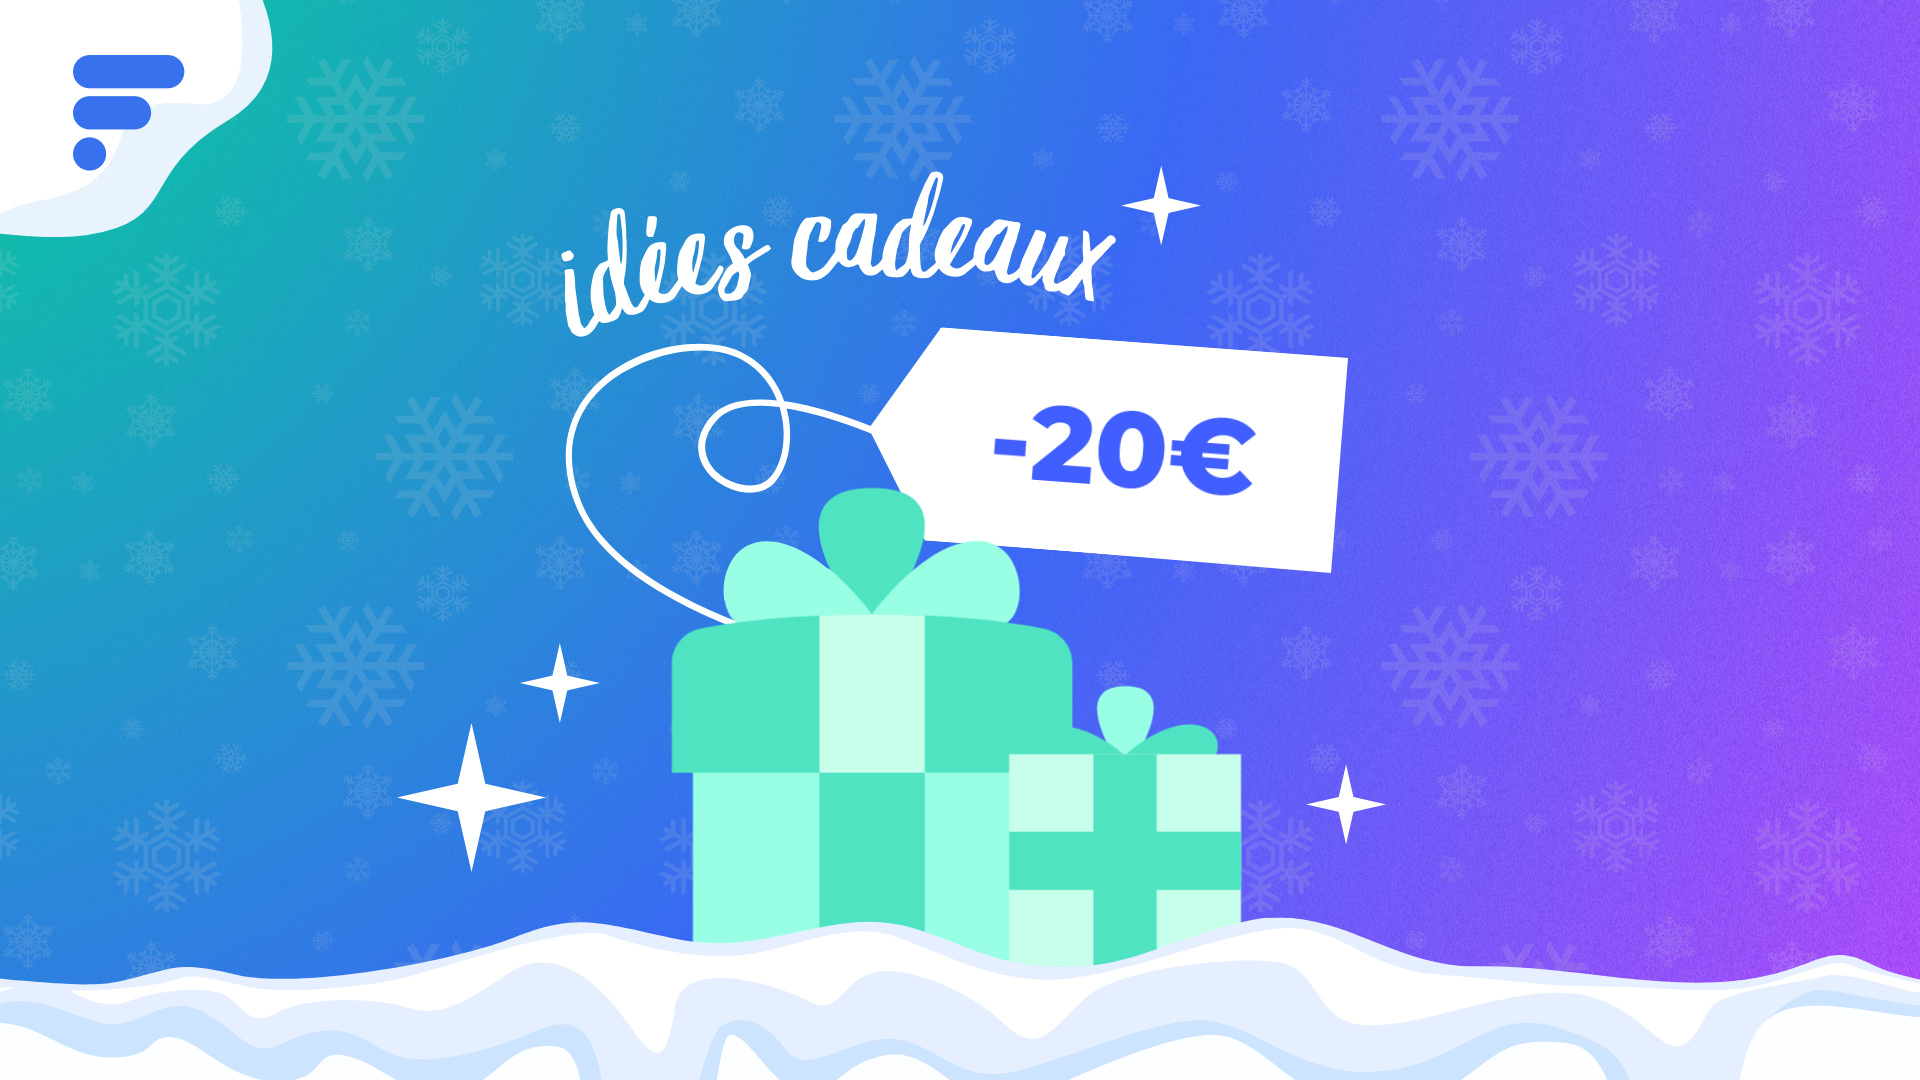 Nos 10 idées cadeaux à moins de 100 euros pour un Noël attentionné -  Numerama